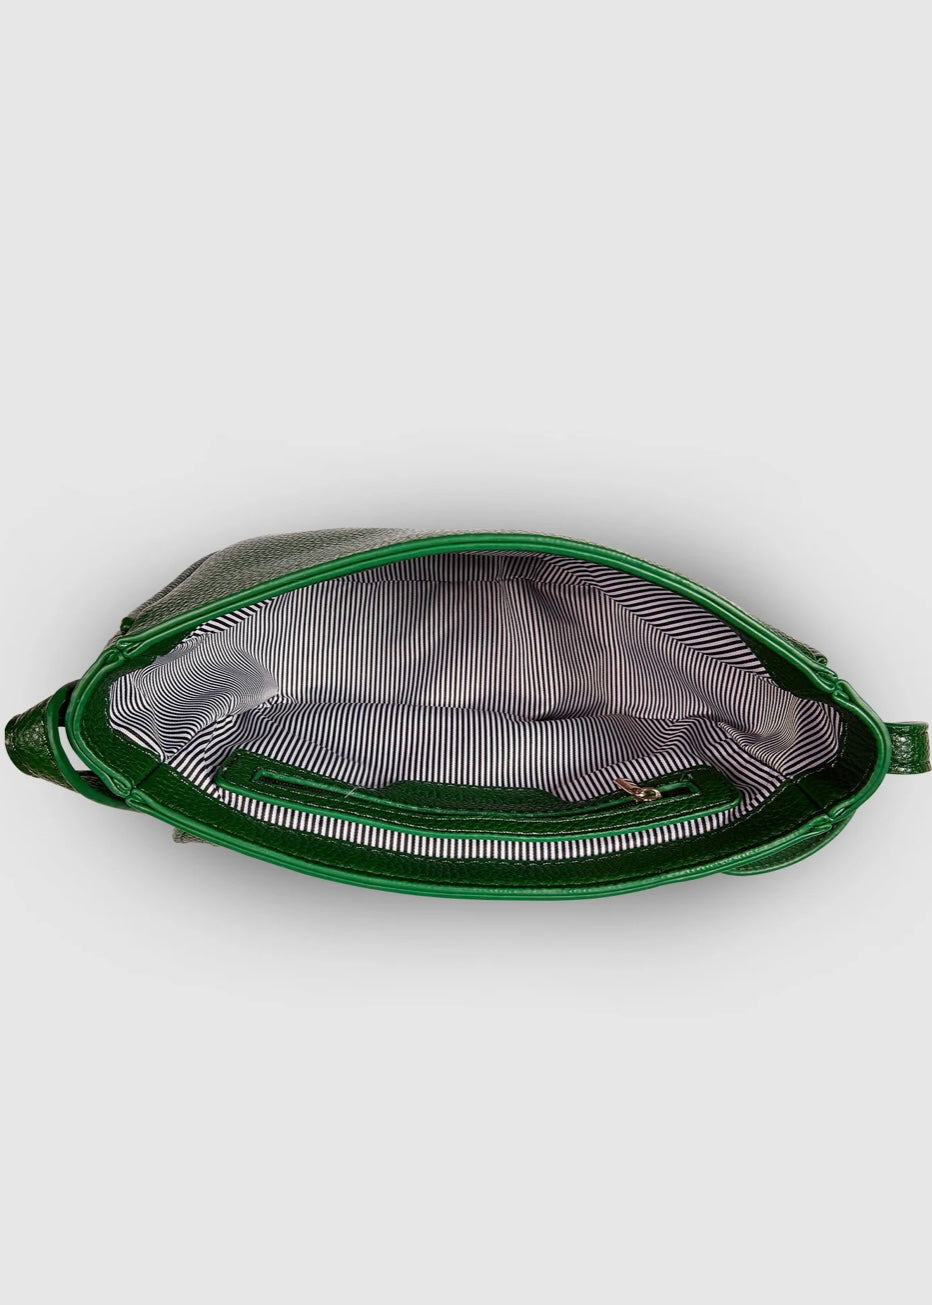 louenhide, trinity, shoulder bag, crossbody bag, green, forest green, saddle bag, bag